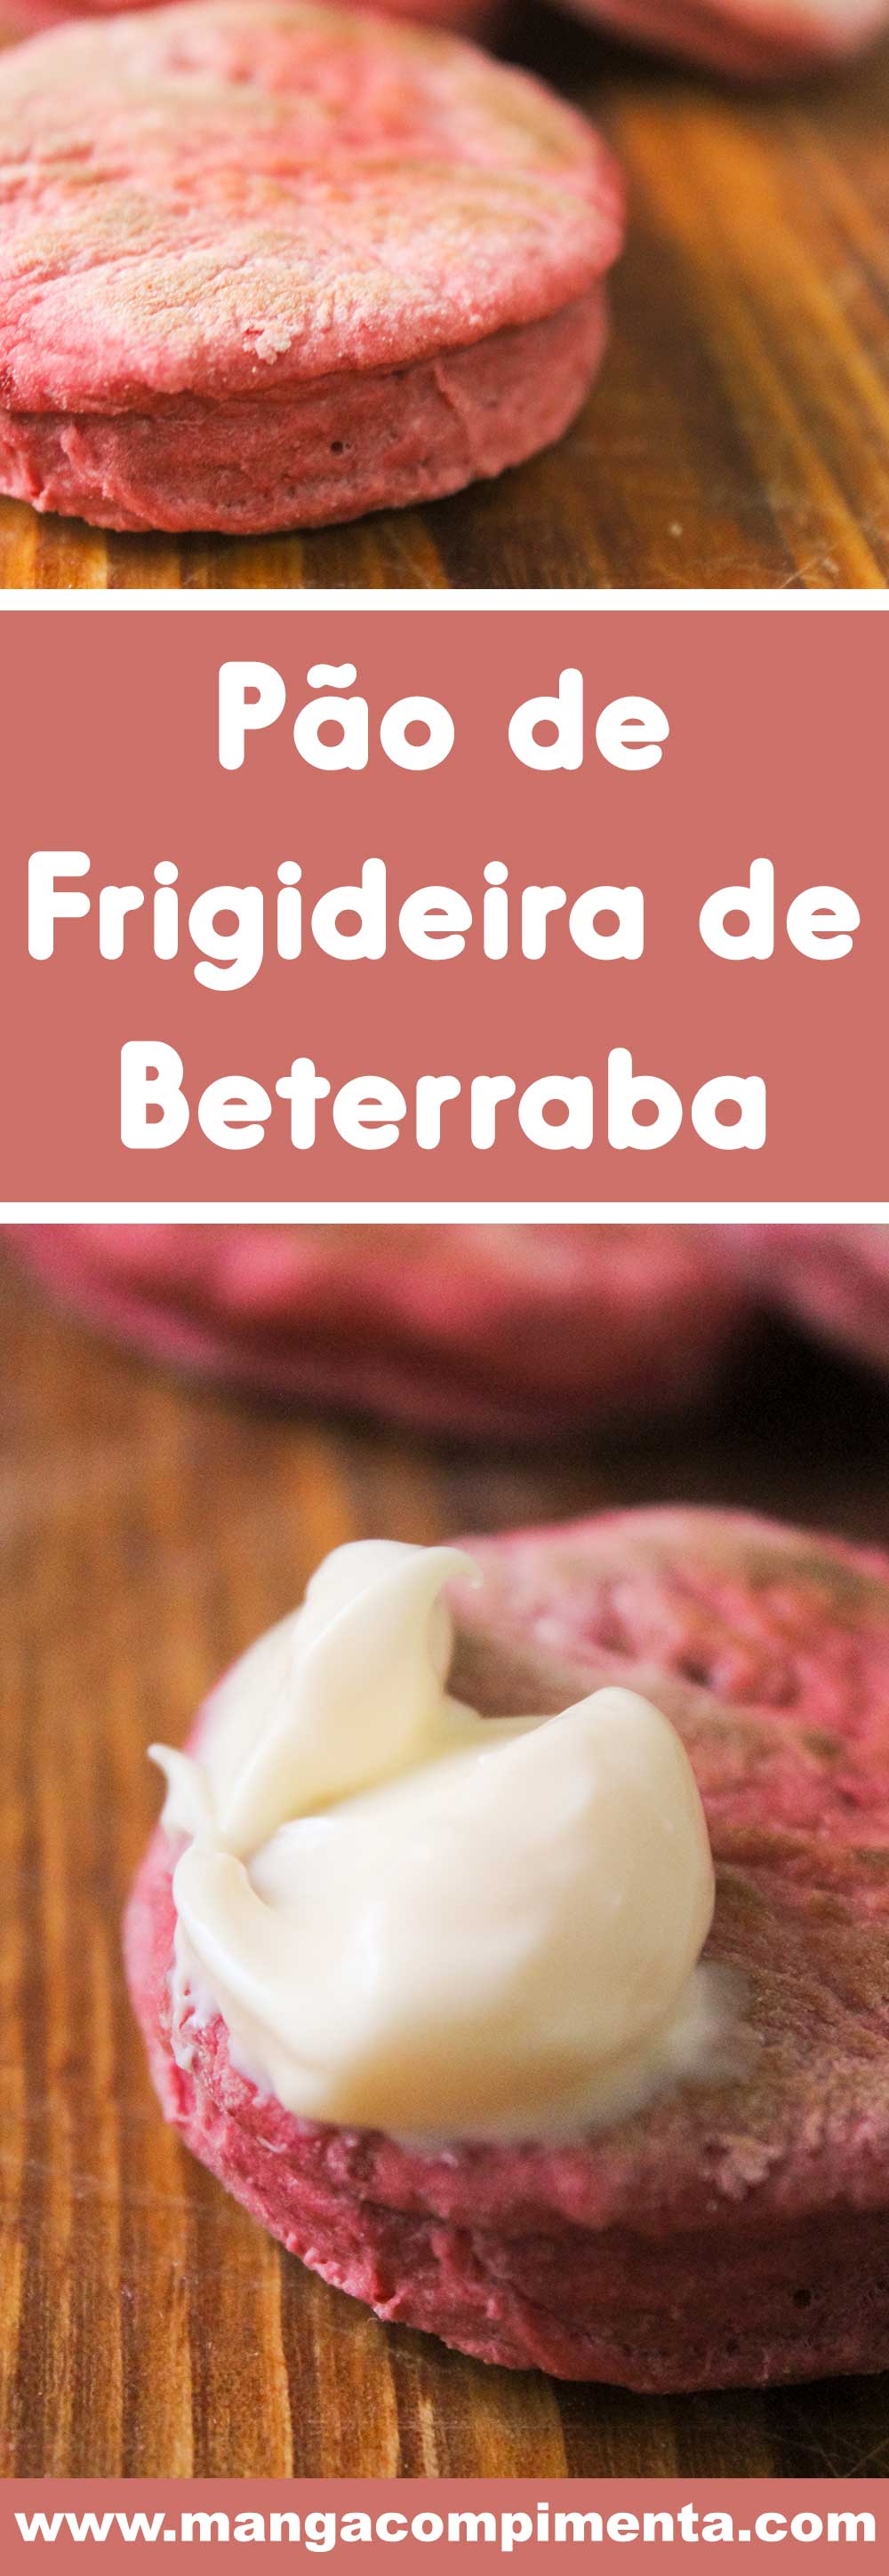 Receita de Pão de Frigideira de Beterraba - prepare um lanche delicioso e colorido para os pequenos nas férias!